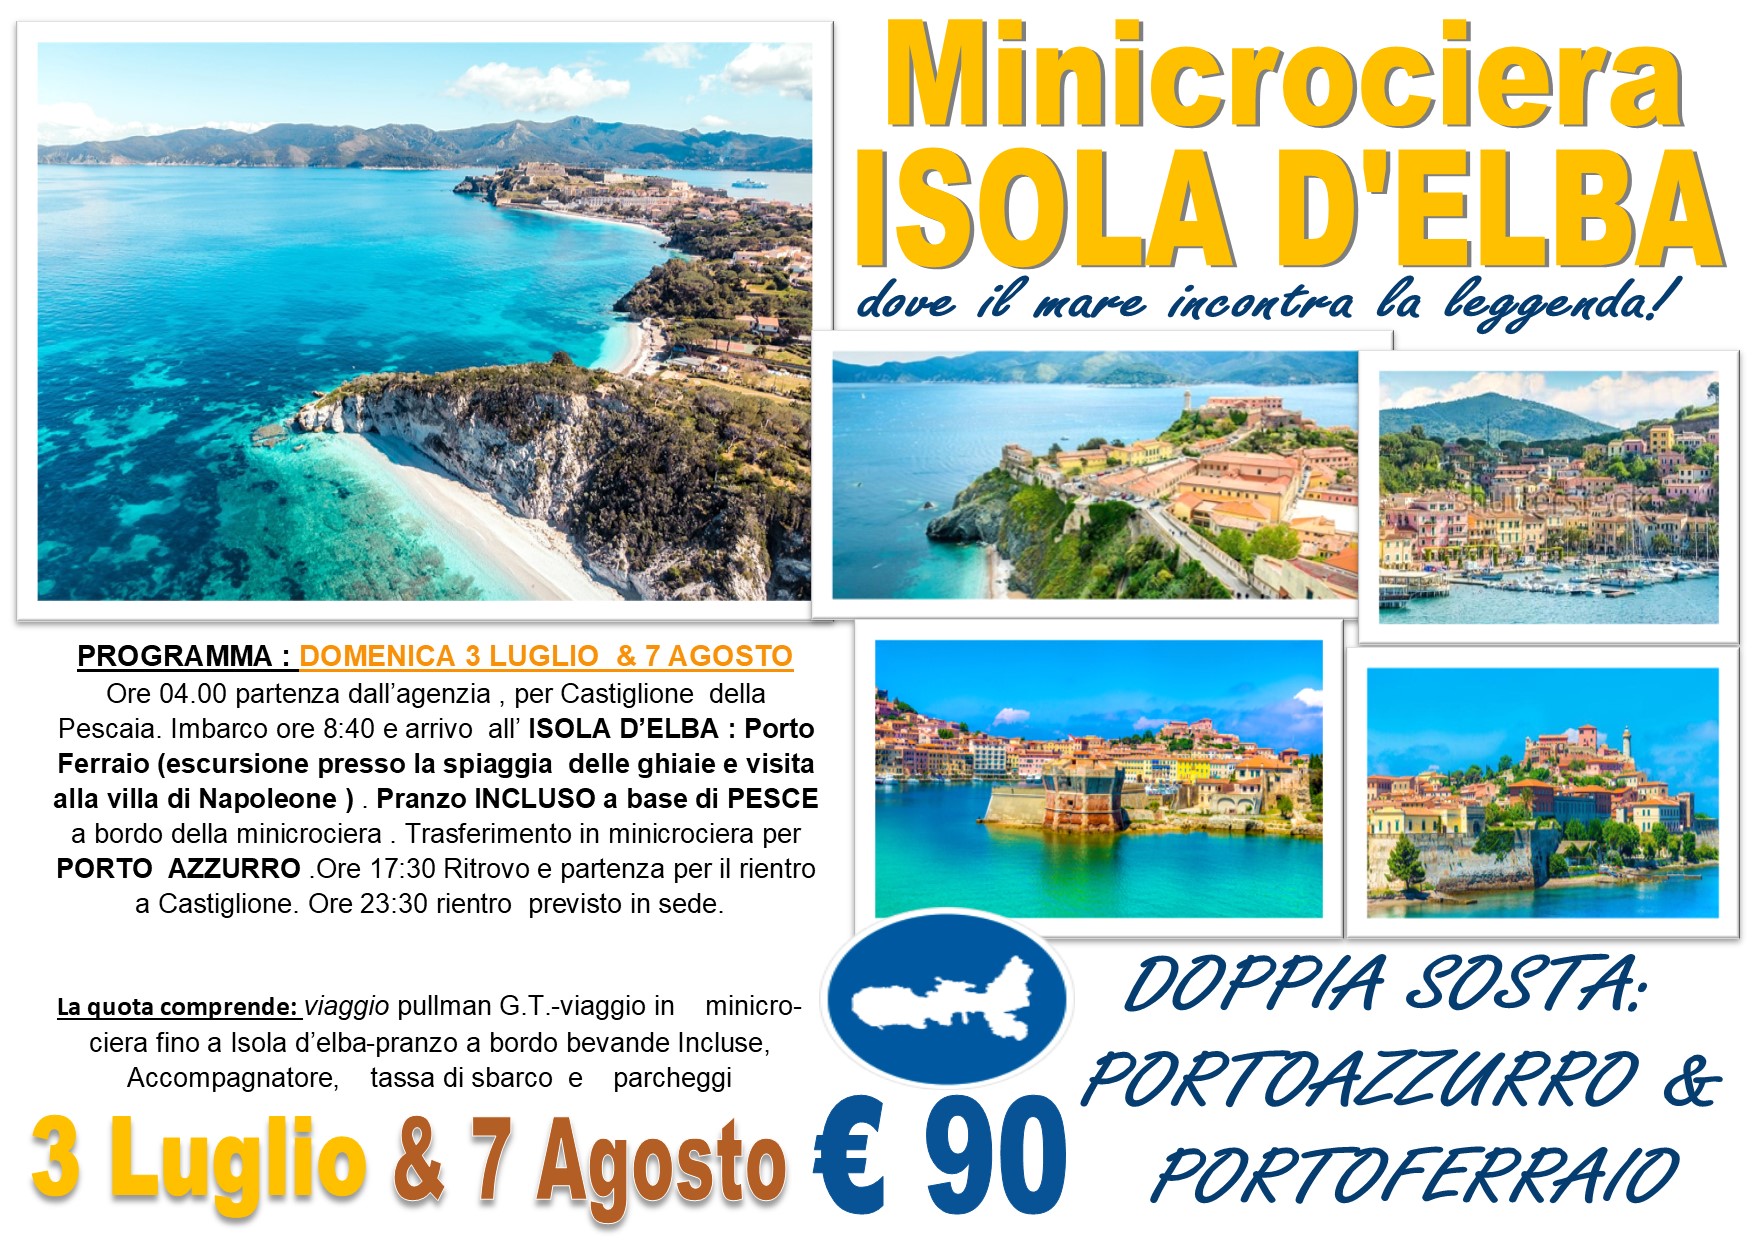 Viaggi di Gruppo: Mini crociera Isola d’Elba “Porto Azzurro e Porto Ferraio” 7 Agosto € 90,00